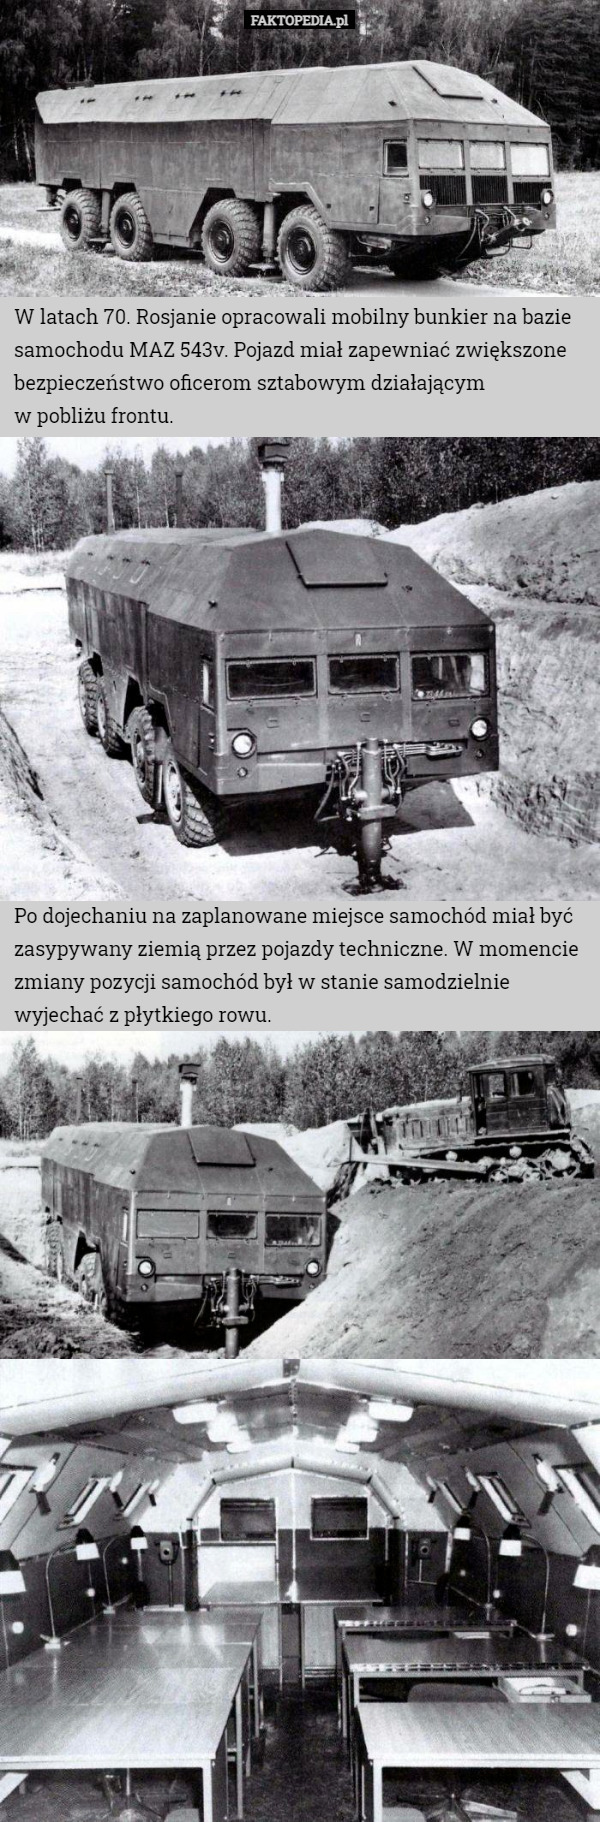 W latach 70. Rosjanie opracowali mobilny bunkier na bazie samochodu MAZ 543v. Pojazd miał zapewniać zwiększone bezpieczeństwo oficerom sztabowym działającym
 w pobliżu frontu. Po dojechaniu na zaplanowane miejsce samochód miał być zasypywany ziemią przez pojazdy techniczne. W momencie zmiany pozycji samochód był w stanie samodzielnie wyjechać z płytkiego rowu. 